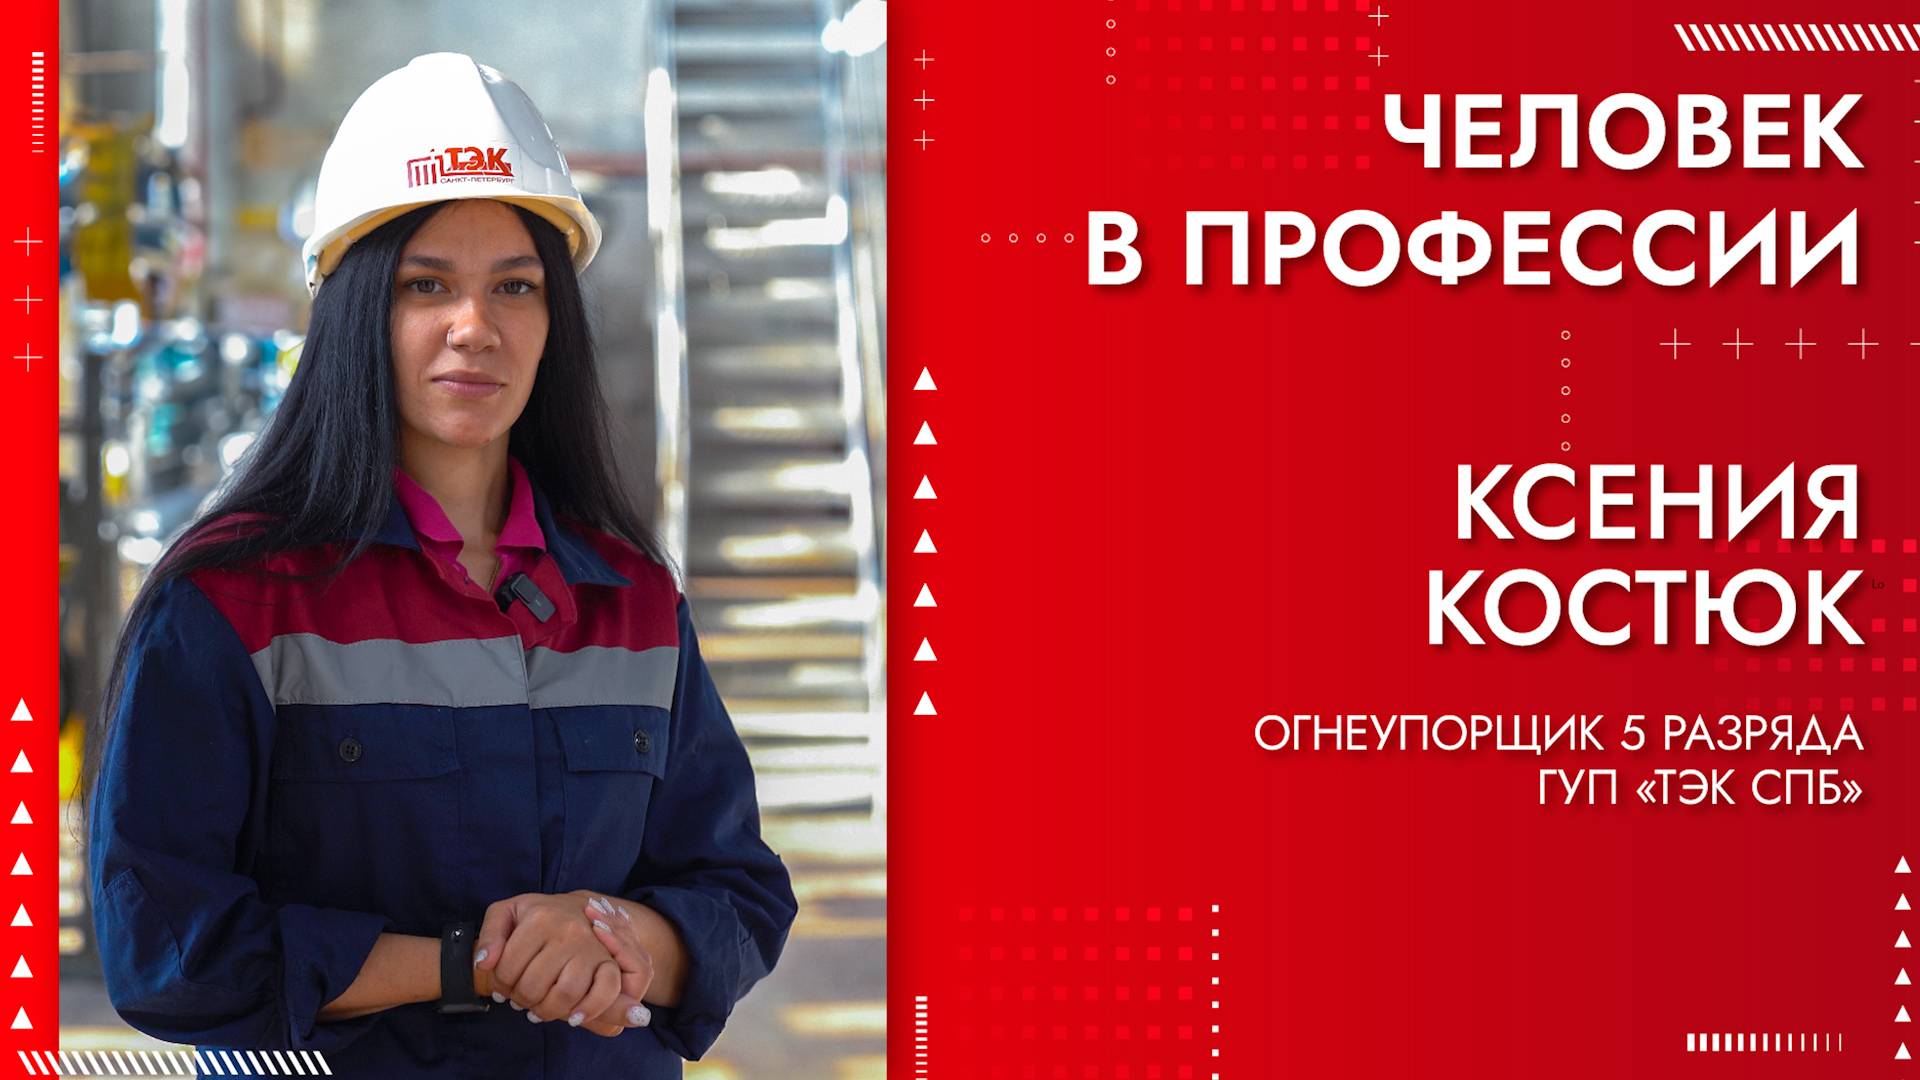 Человек в профессии - Ксения Костюк